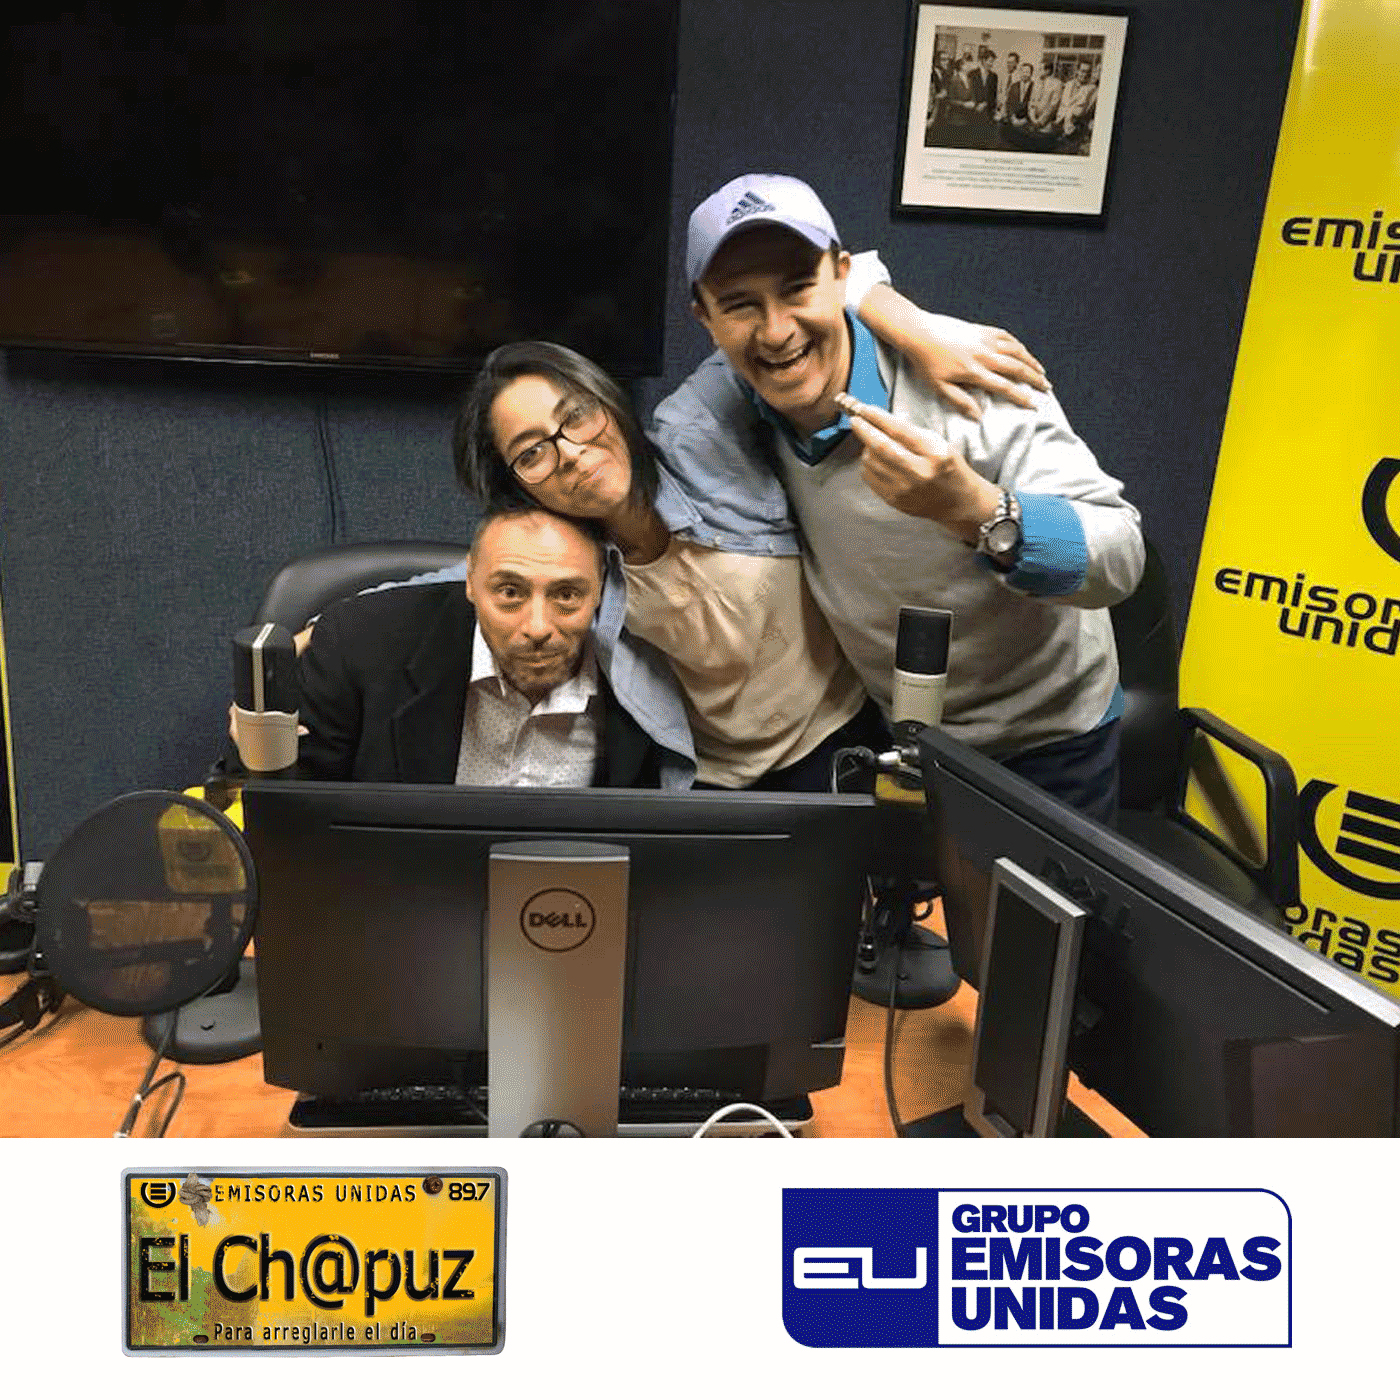 EC027 - El Chapuz - Emisoras unidas - #AhiQuedo